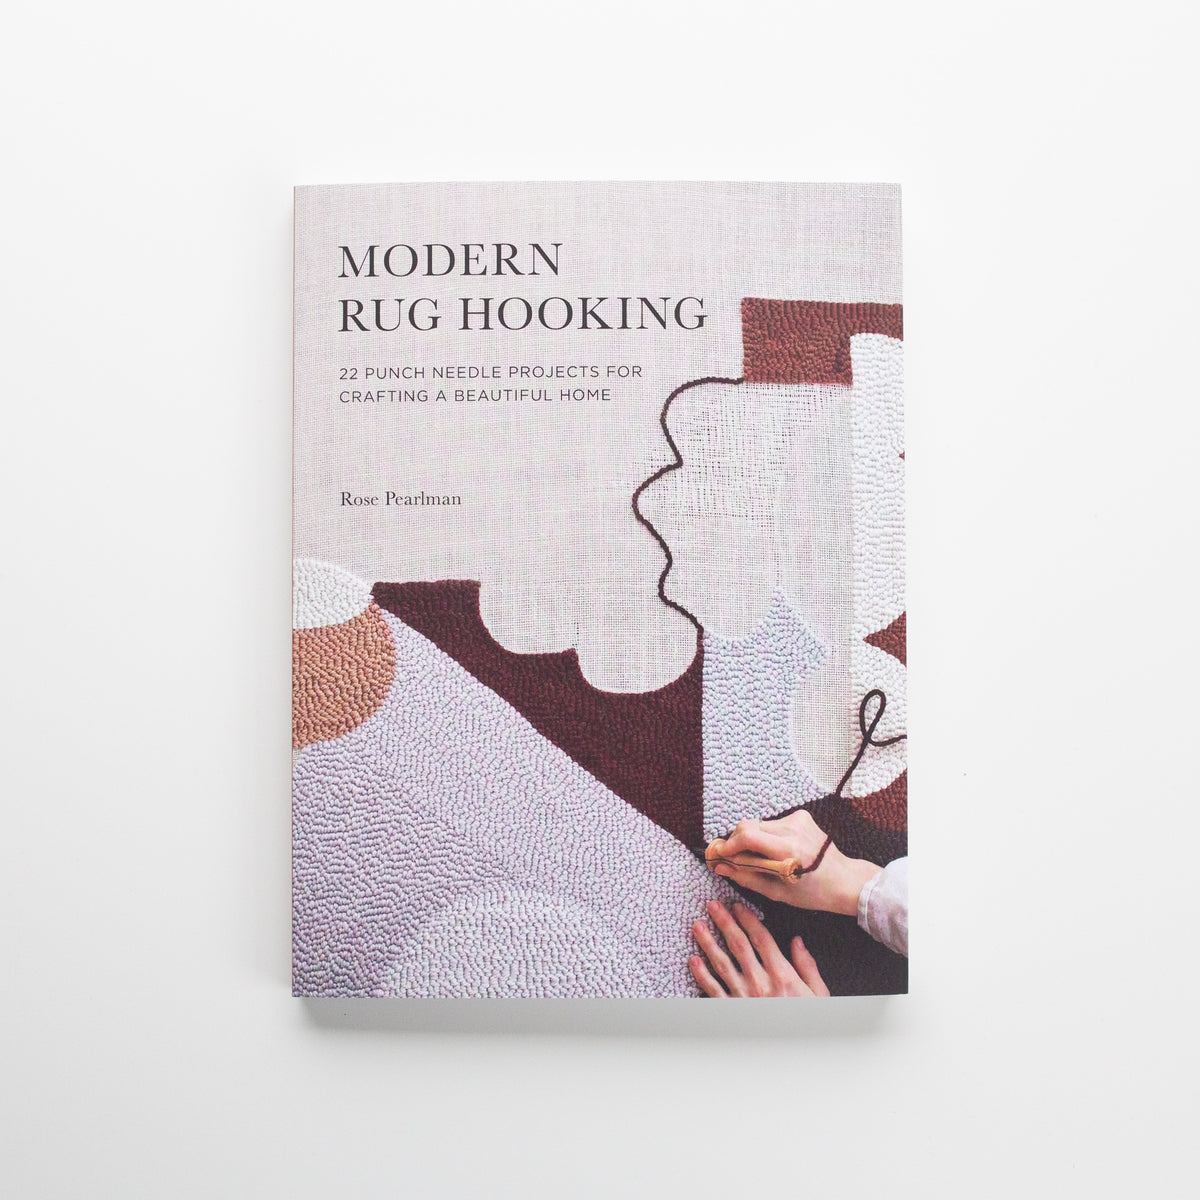 'Modern Rug Hooking' by Rose Pearlman